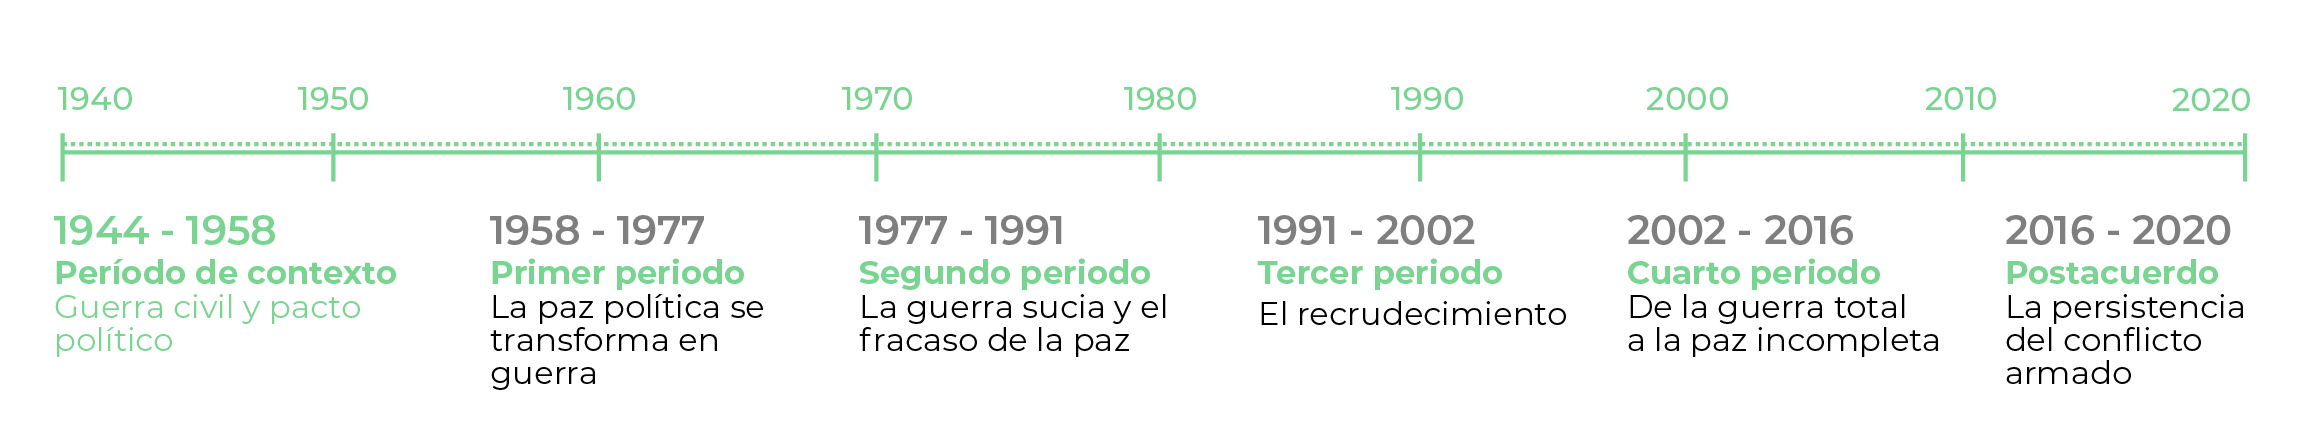 Línea de tiempo con periodización del conflicto armado colombiano desde 1940 hasta 2020